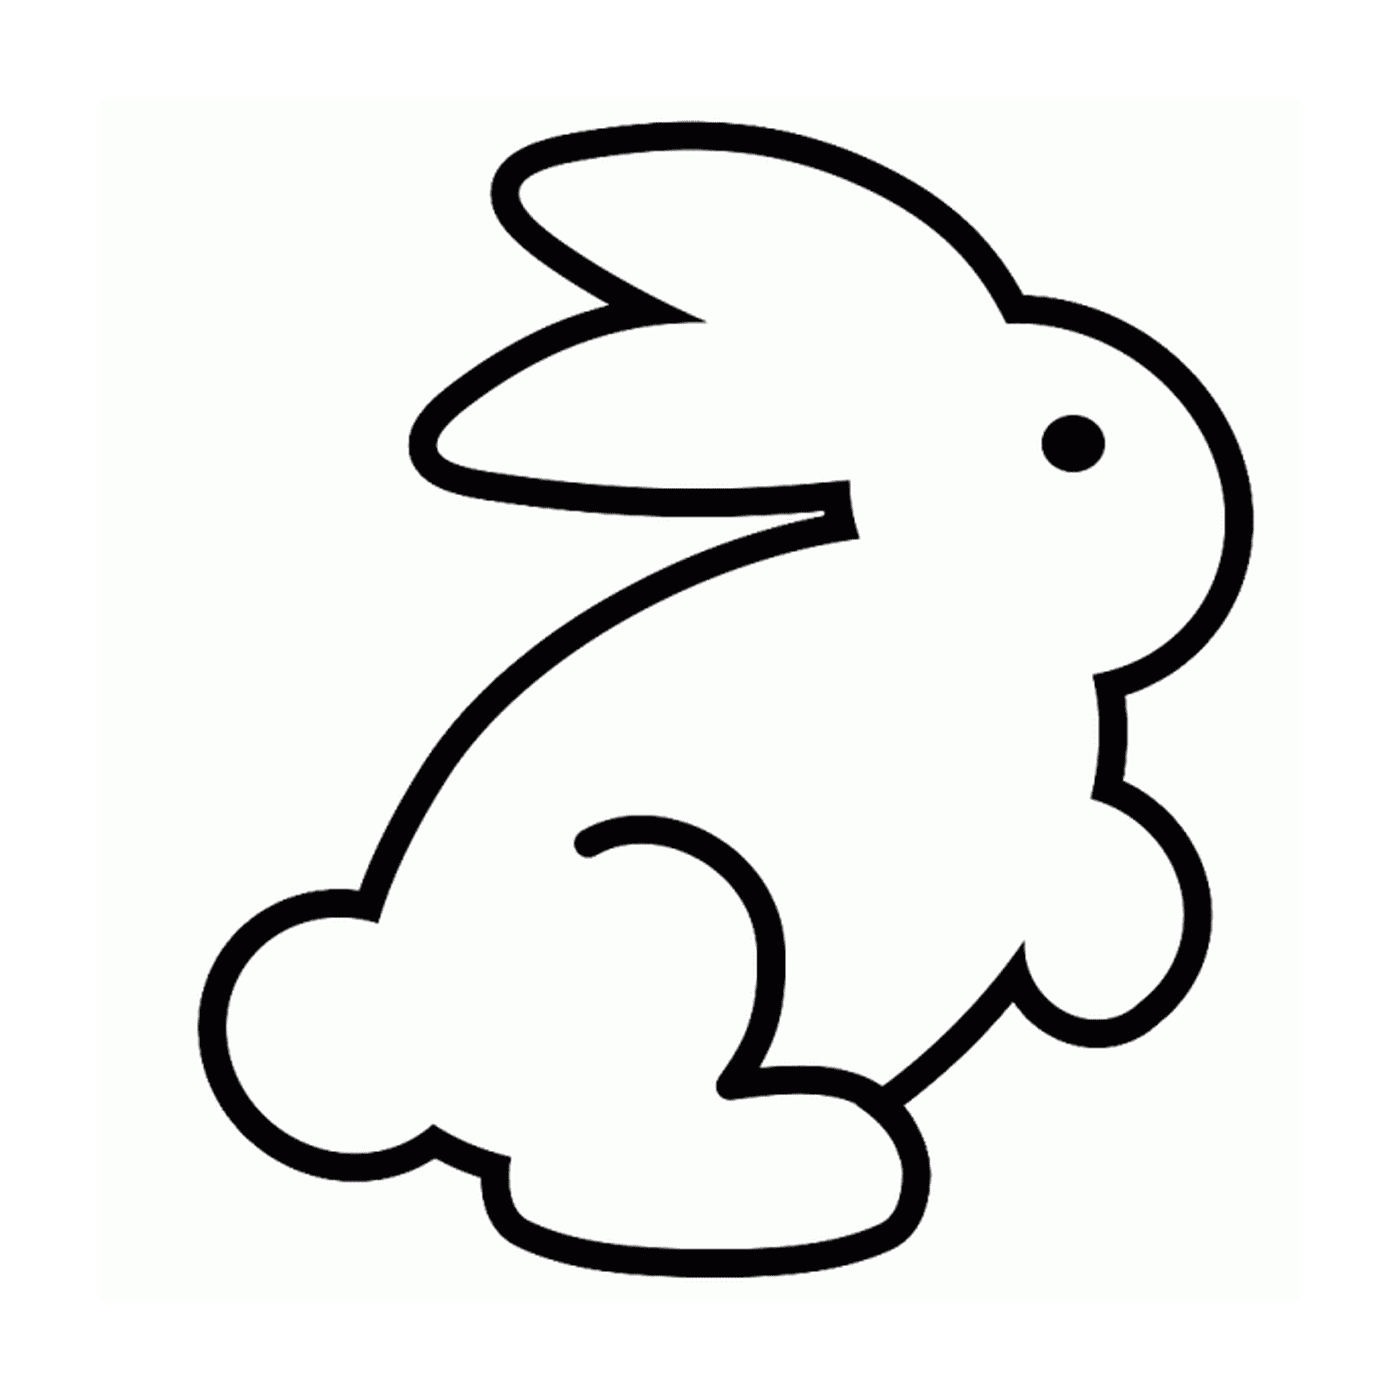  一只兔子坐着 